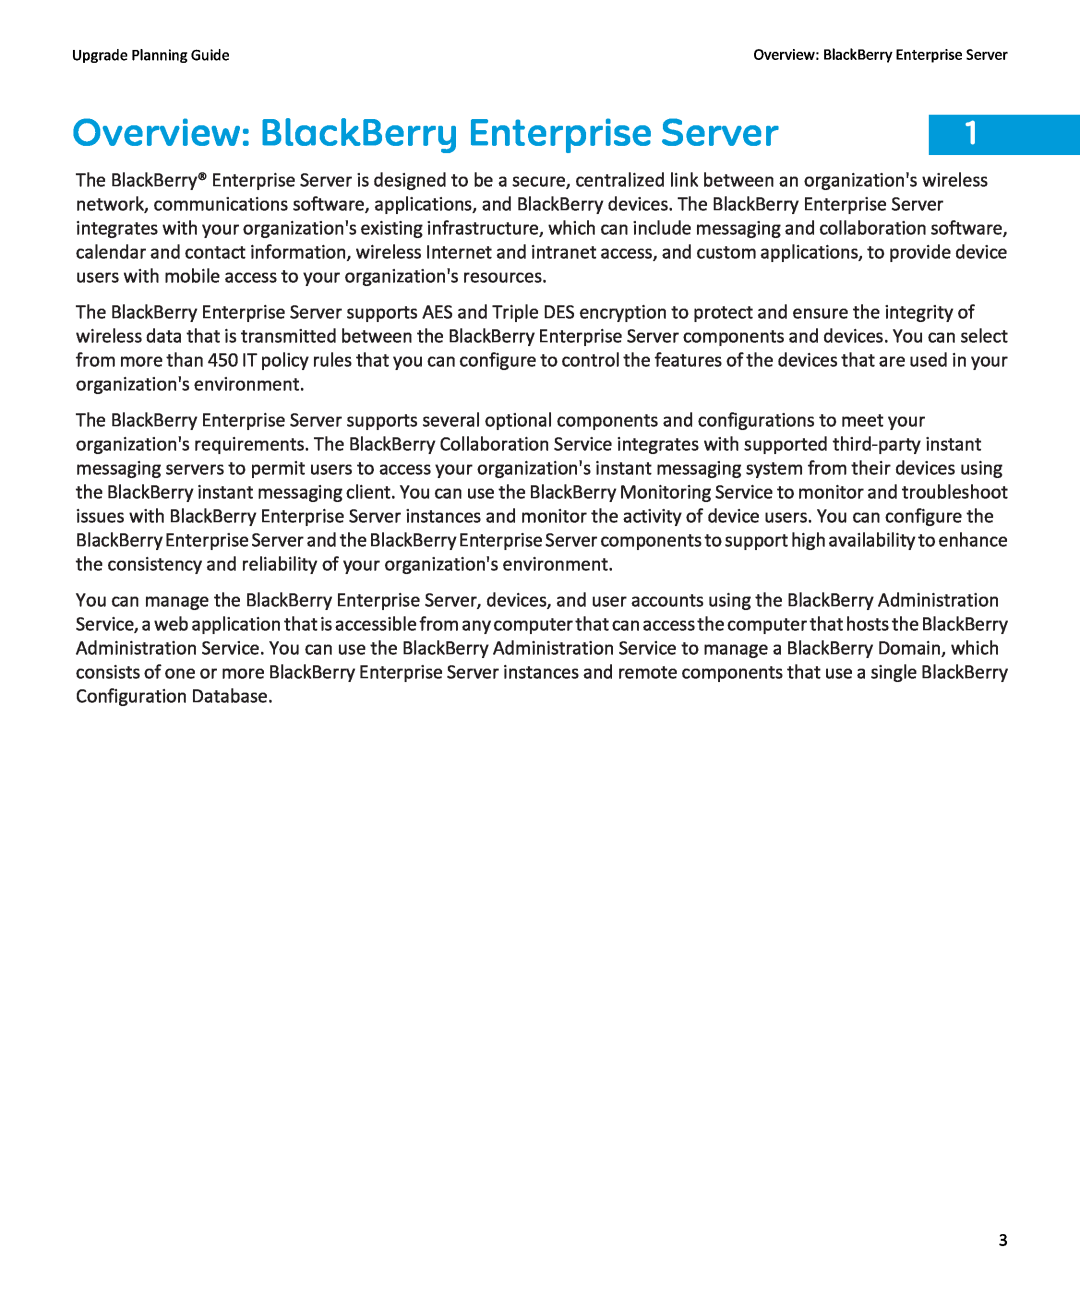 Blackberry blackberry enterprise server manual Overview BlackBerry Enterprise Server, Upgrade Planning Guide 